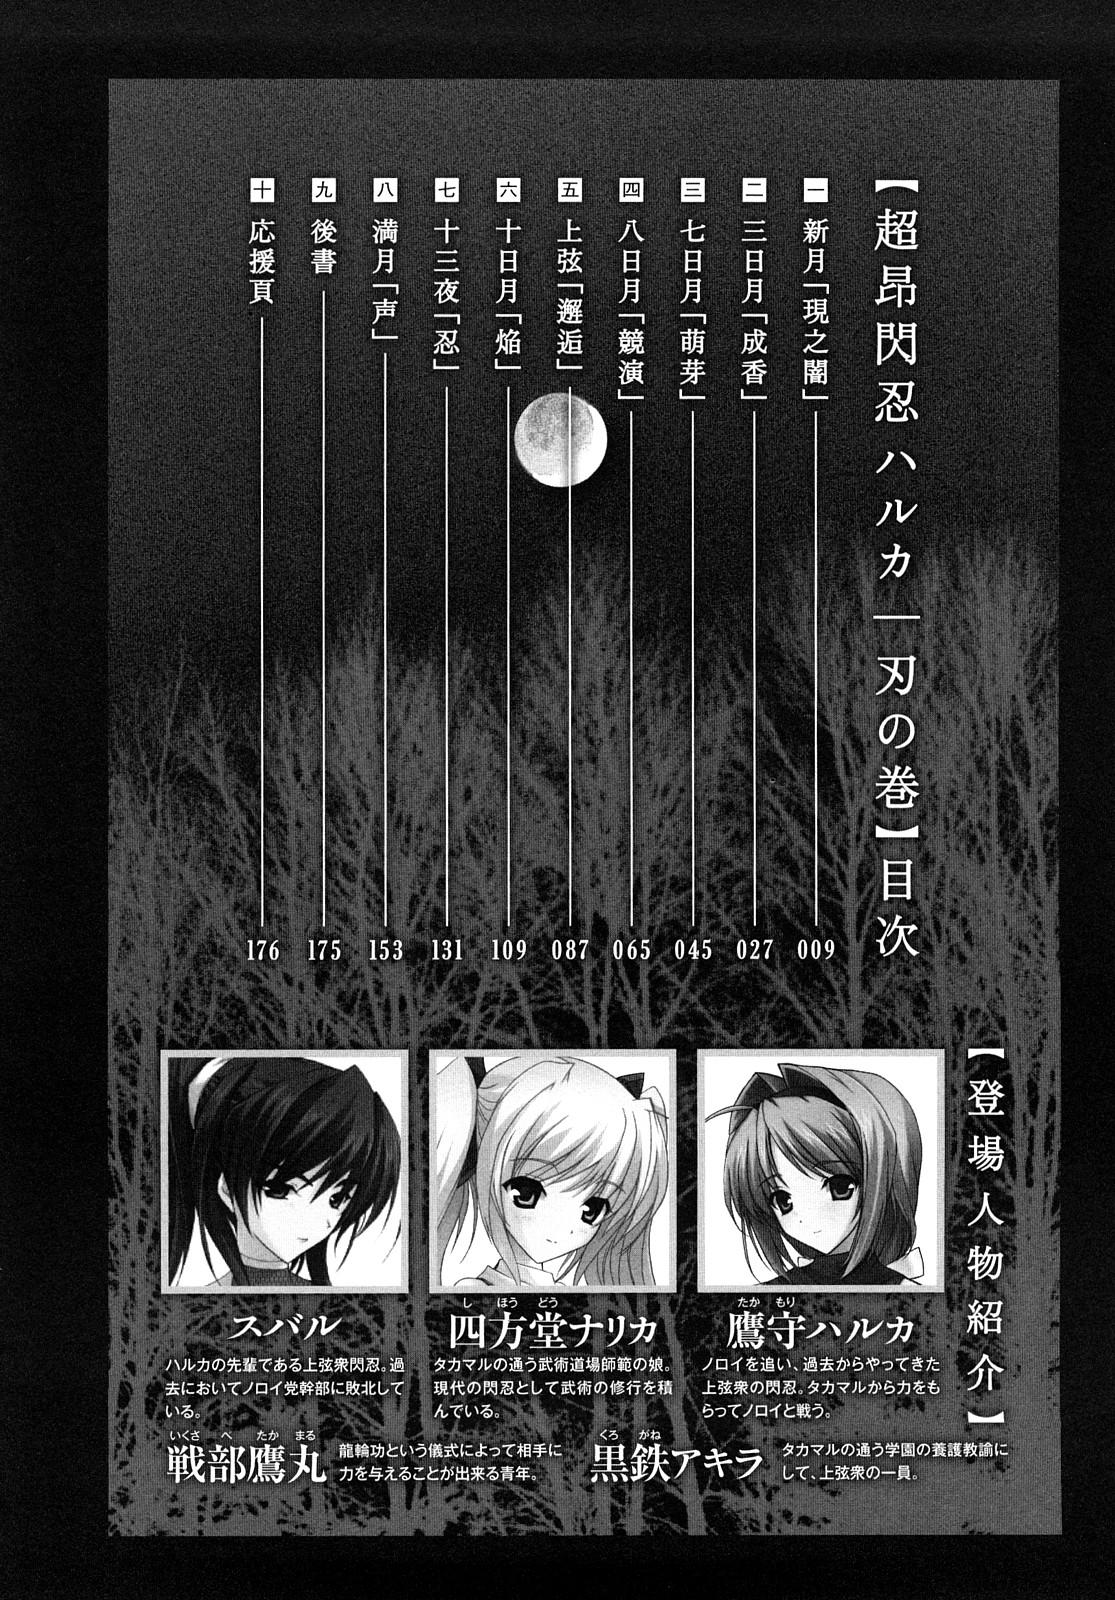 Teenporn Choukousennin Haruka: Yaiba no Maki - Beat blades haruka Foda - Page 9